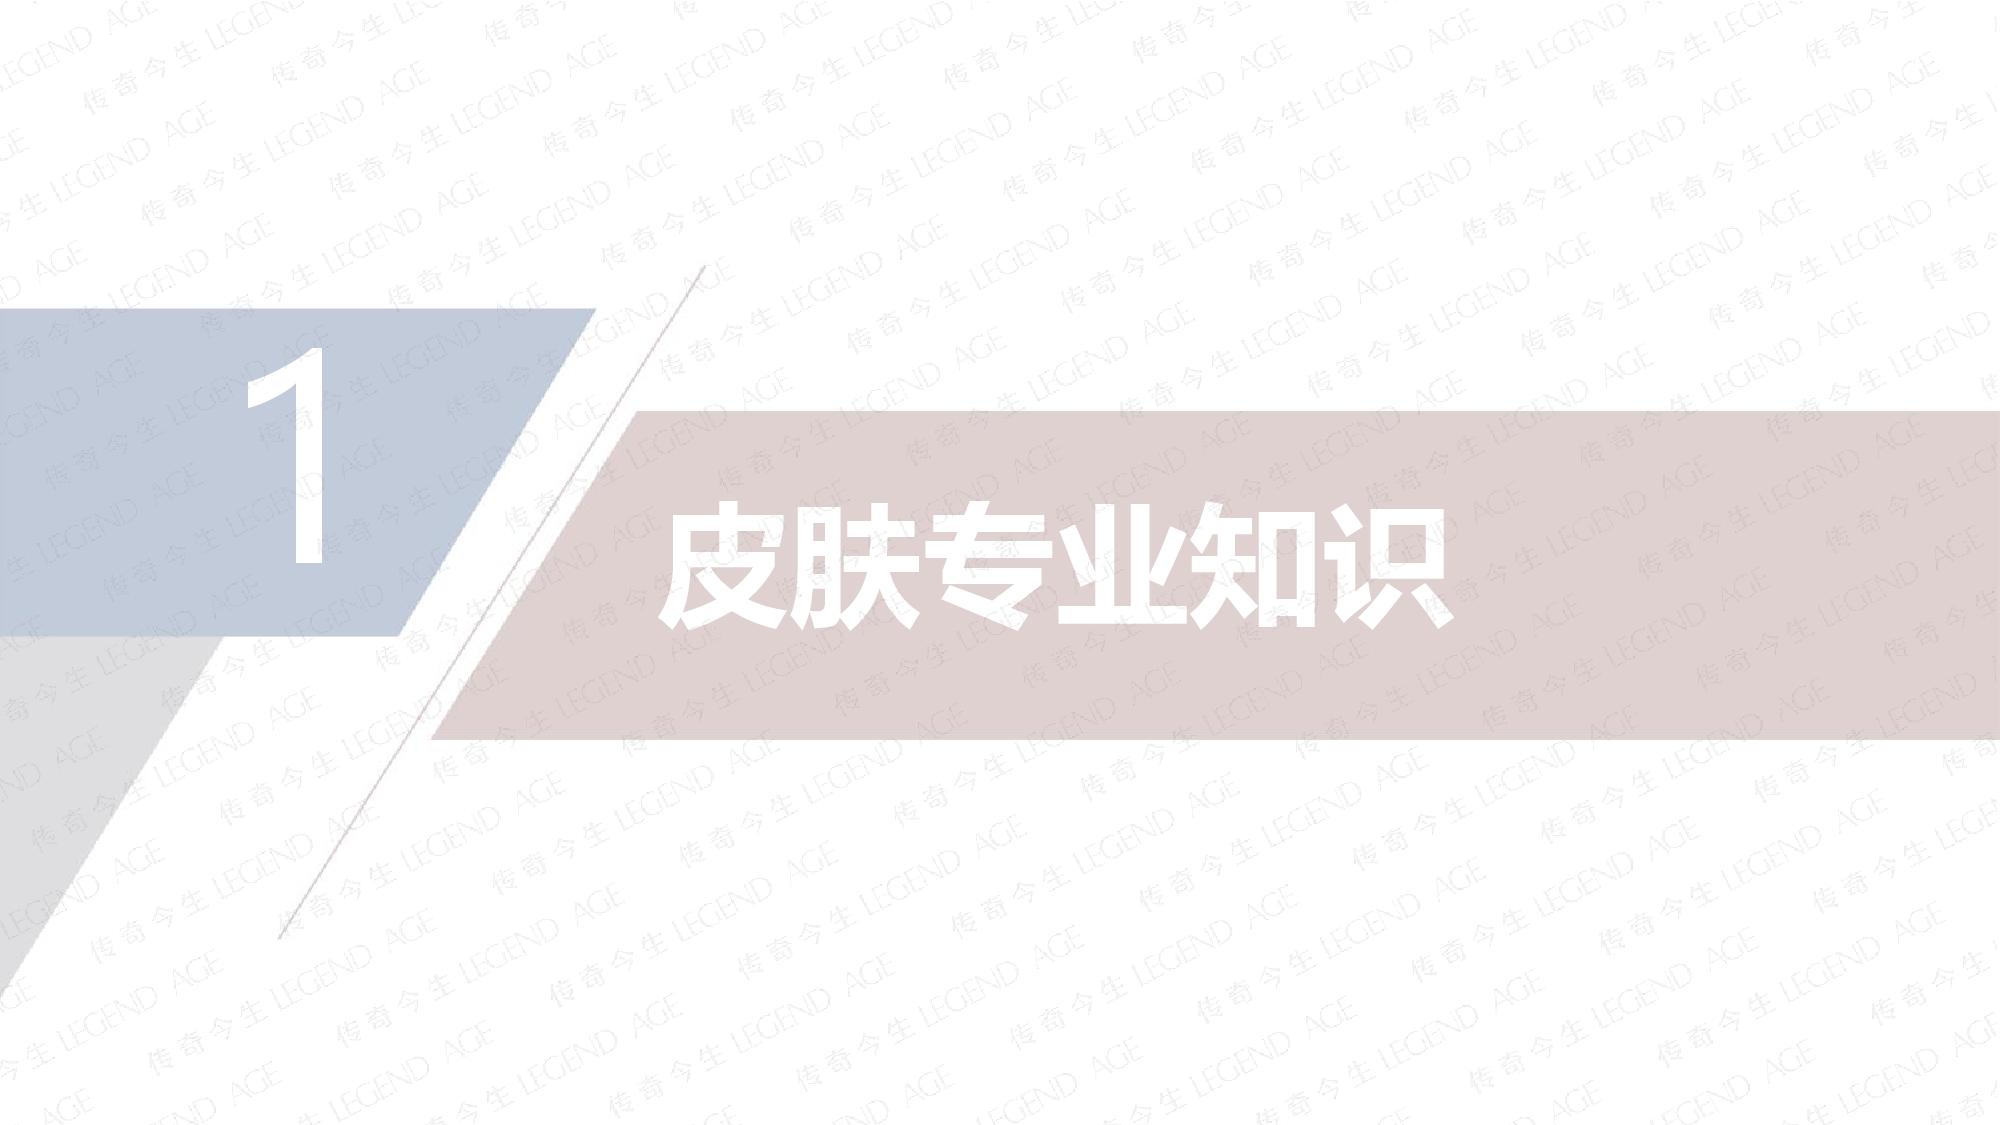 传奇今生水漾保湿面膜产品介绍20201112(1)-page-003.jpg